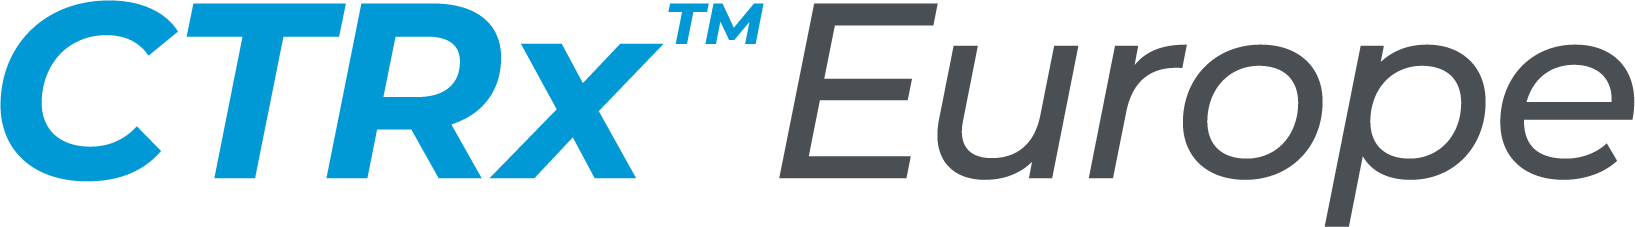 CTRx Europe logo